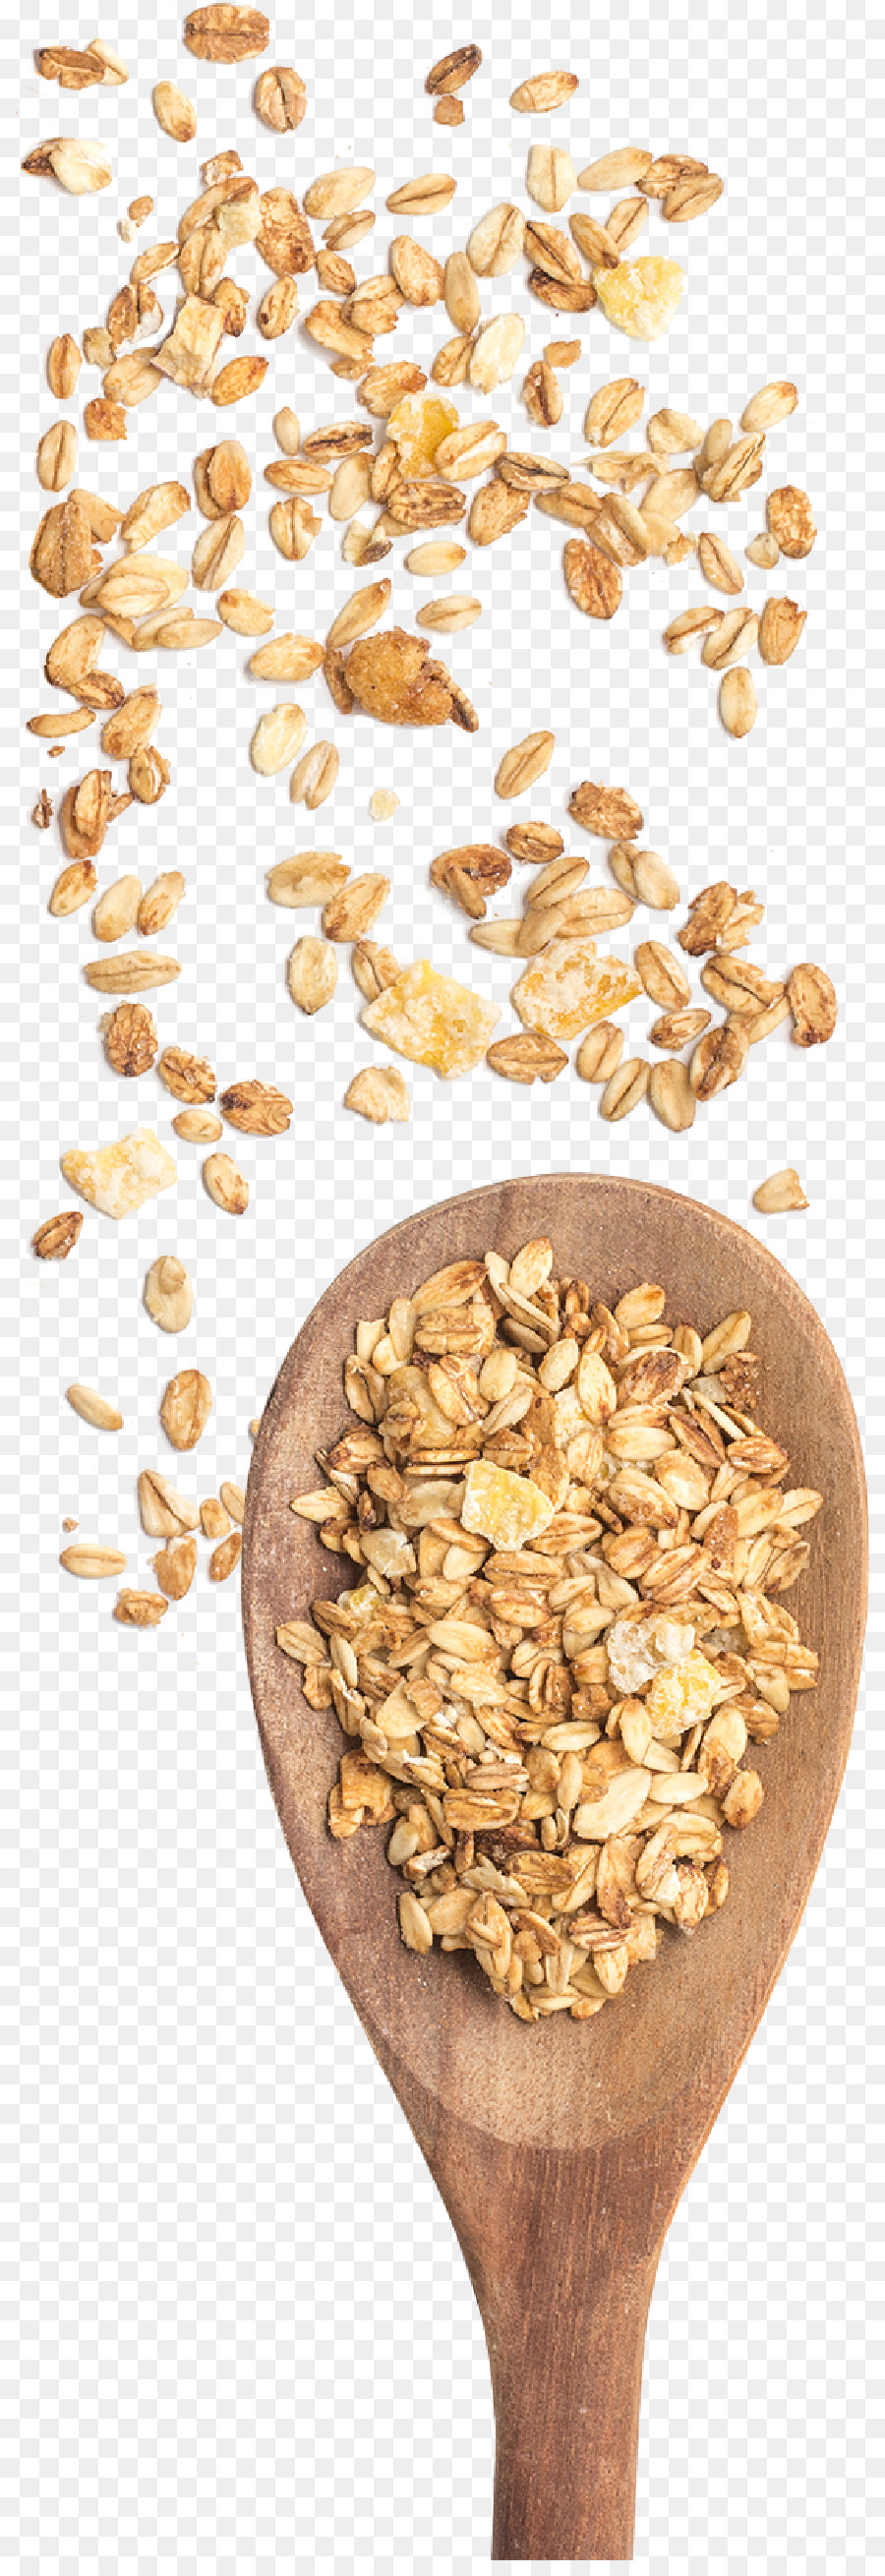 Colazione a base di cereali Cereali, germe di grano Intero, Avena - colazione